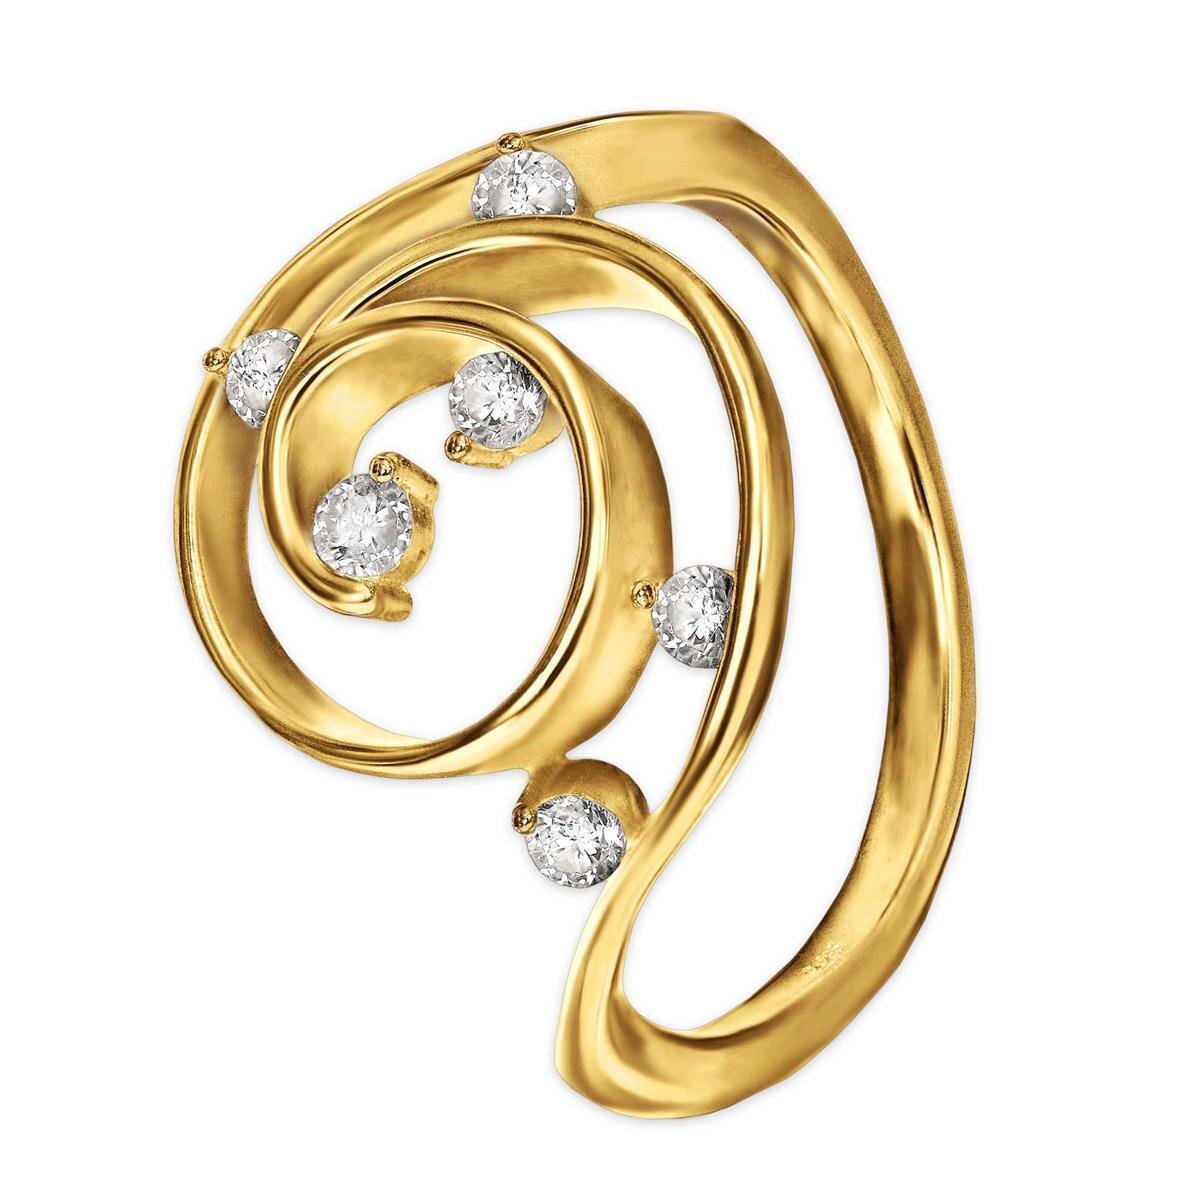 Goldener Ring Florales Muster als Kringel viele Zirkonia 925 Sterling Silber 52